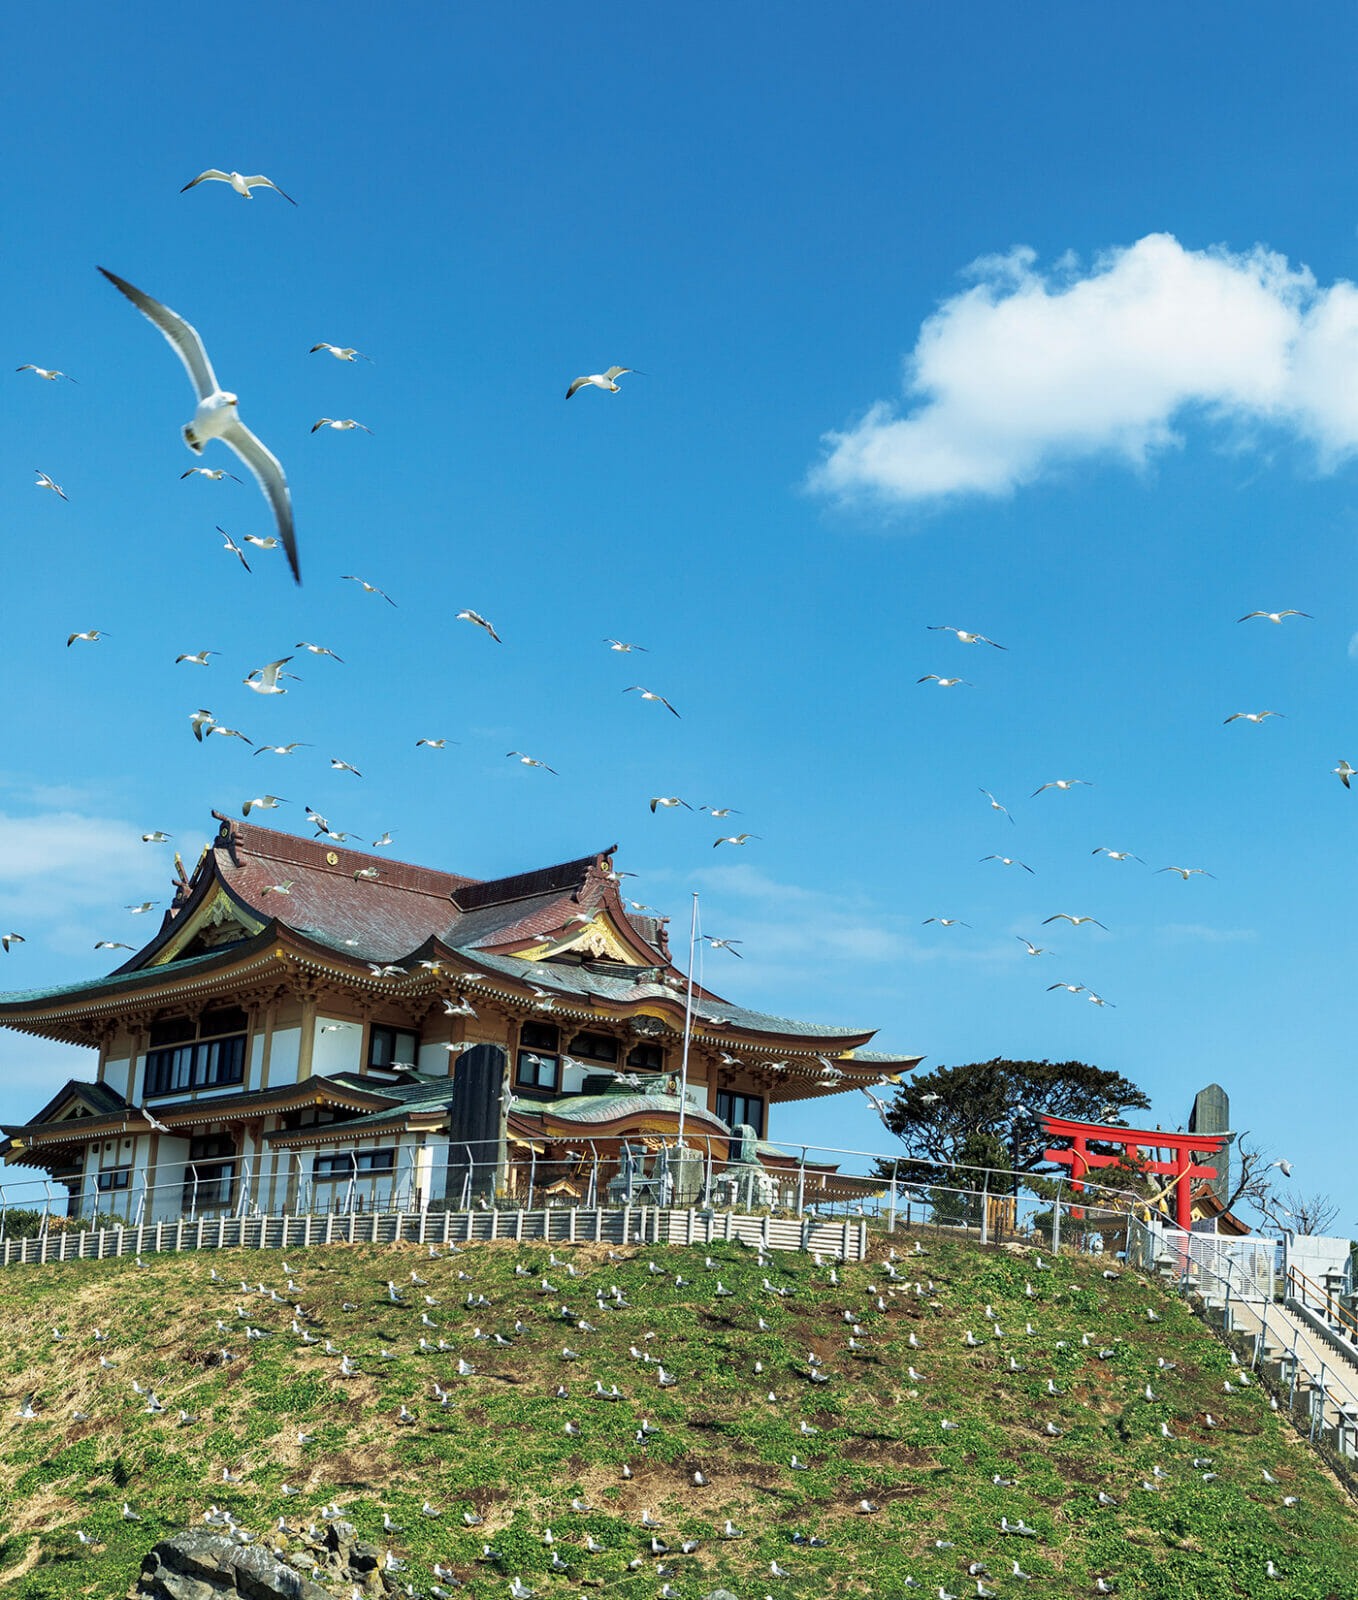 ウミネコが繁殖と子育てをする様子が見られる蕪嶋神社のある蕪島